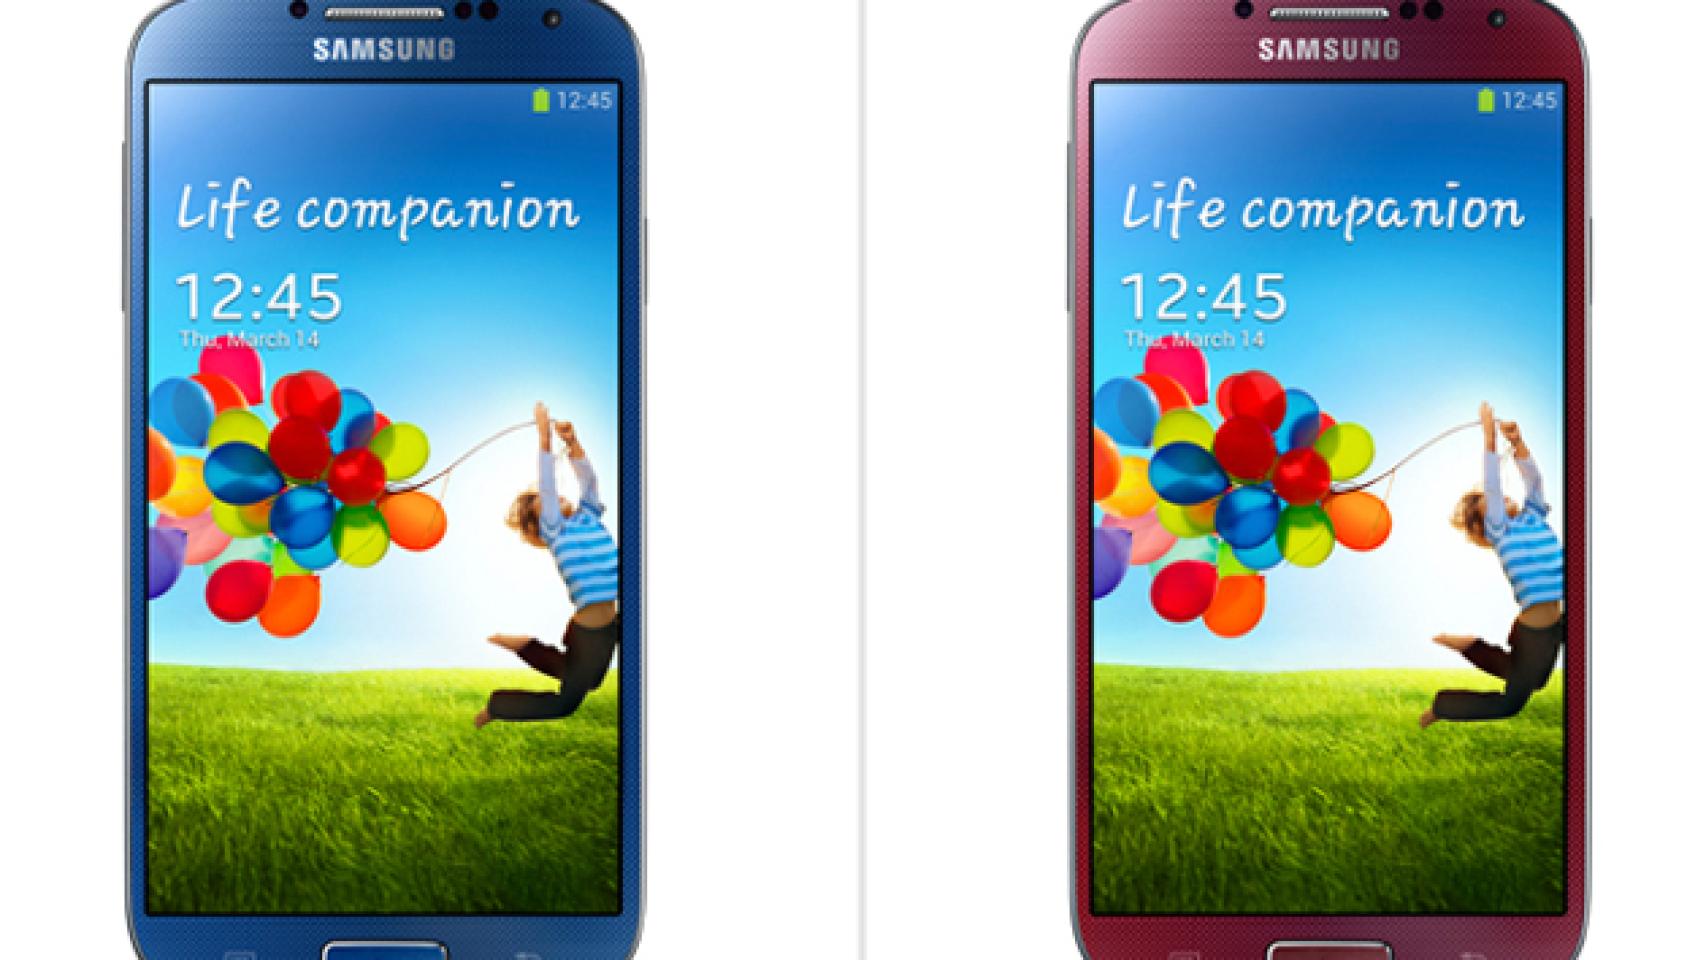 Samsung Galaxy S4 en cuatro nuevos colores este verano para celebrar sus 10 millones de ventas